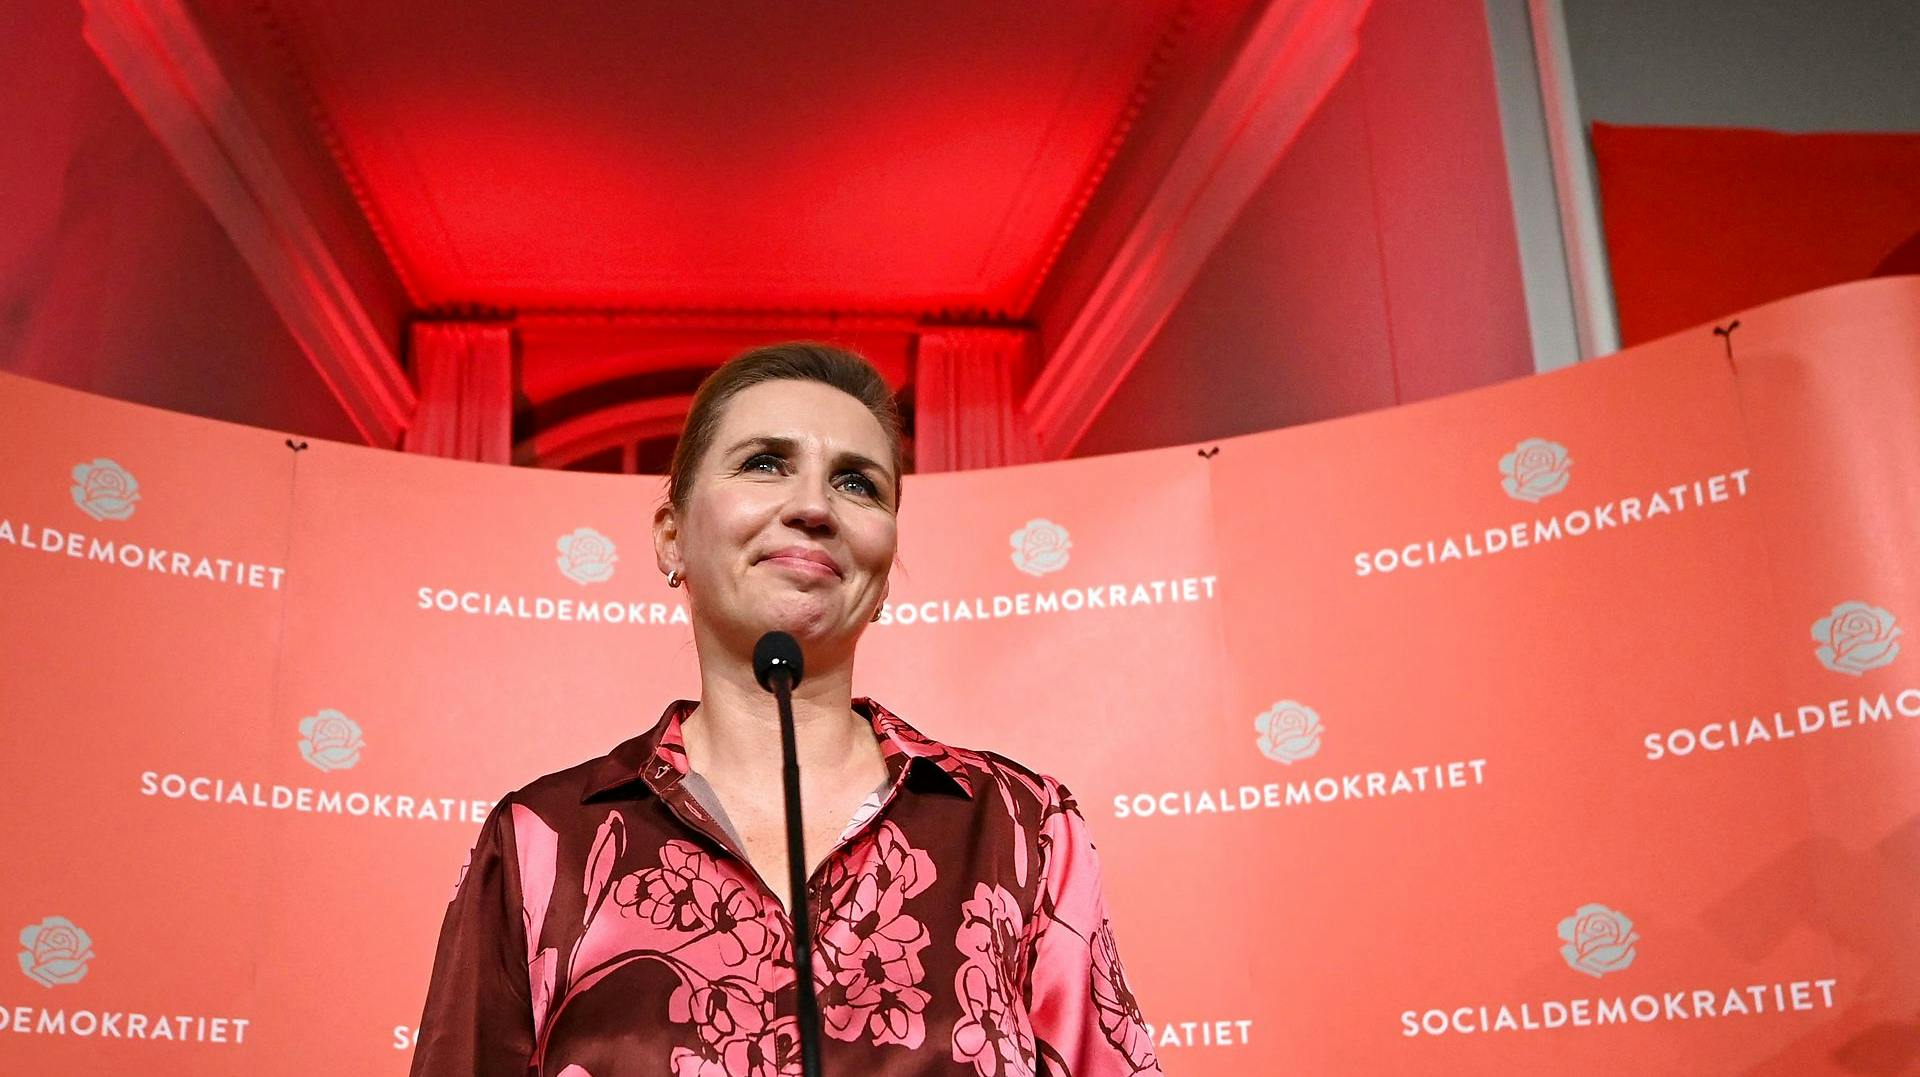 Mette Frederiksen kom godt ud af valge og rød blok egentlig lige nu står til et flertal. Men hun vil stadig forsøge at danne en bred regering.